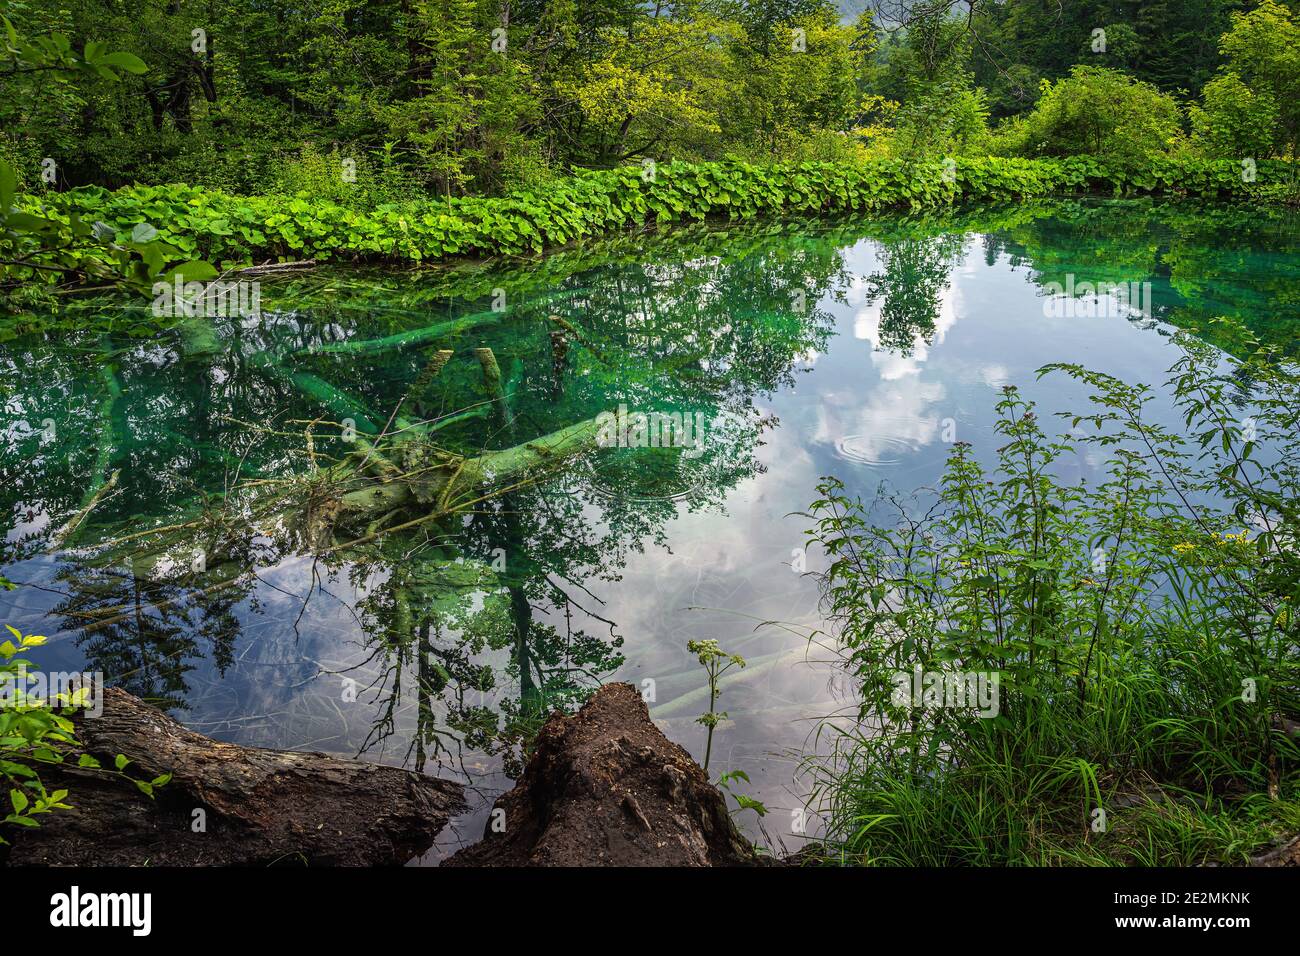 Grands arbres déchus submergés dans un lac entouré de forêts verdoyantes et de collines, Parc national des lacs de Plitvice, classé au patrimoine mondial de l'UNESCO en Croatie Banque D'Images